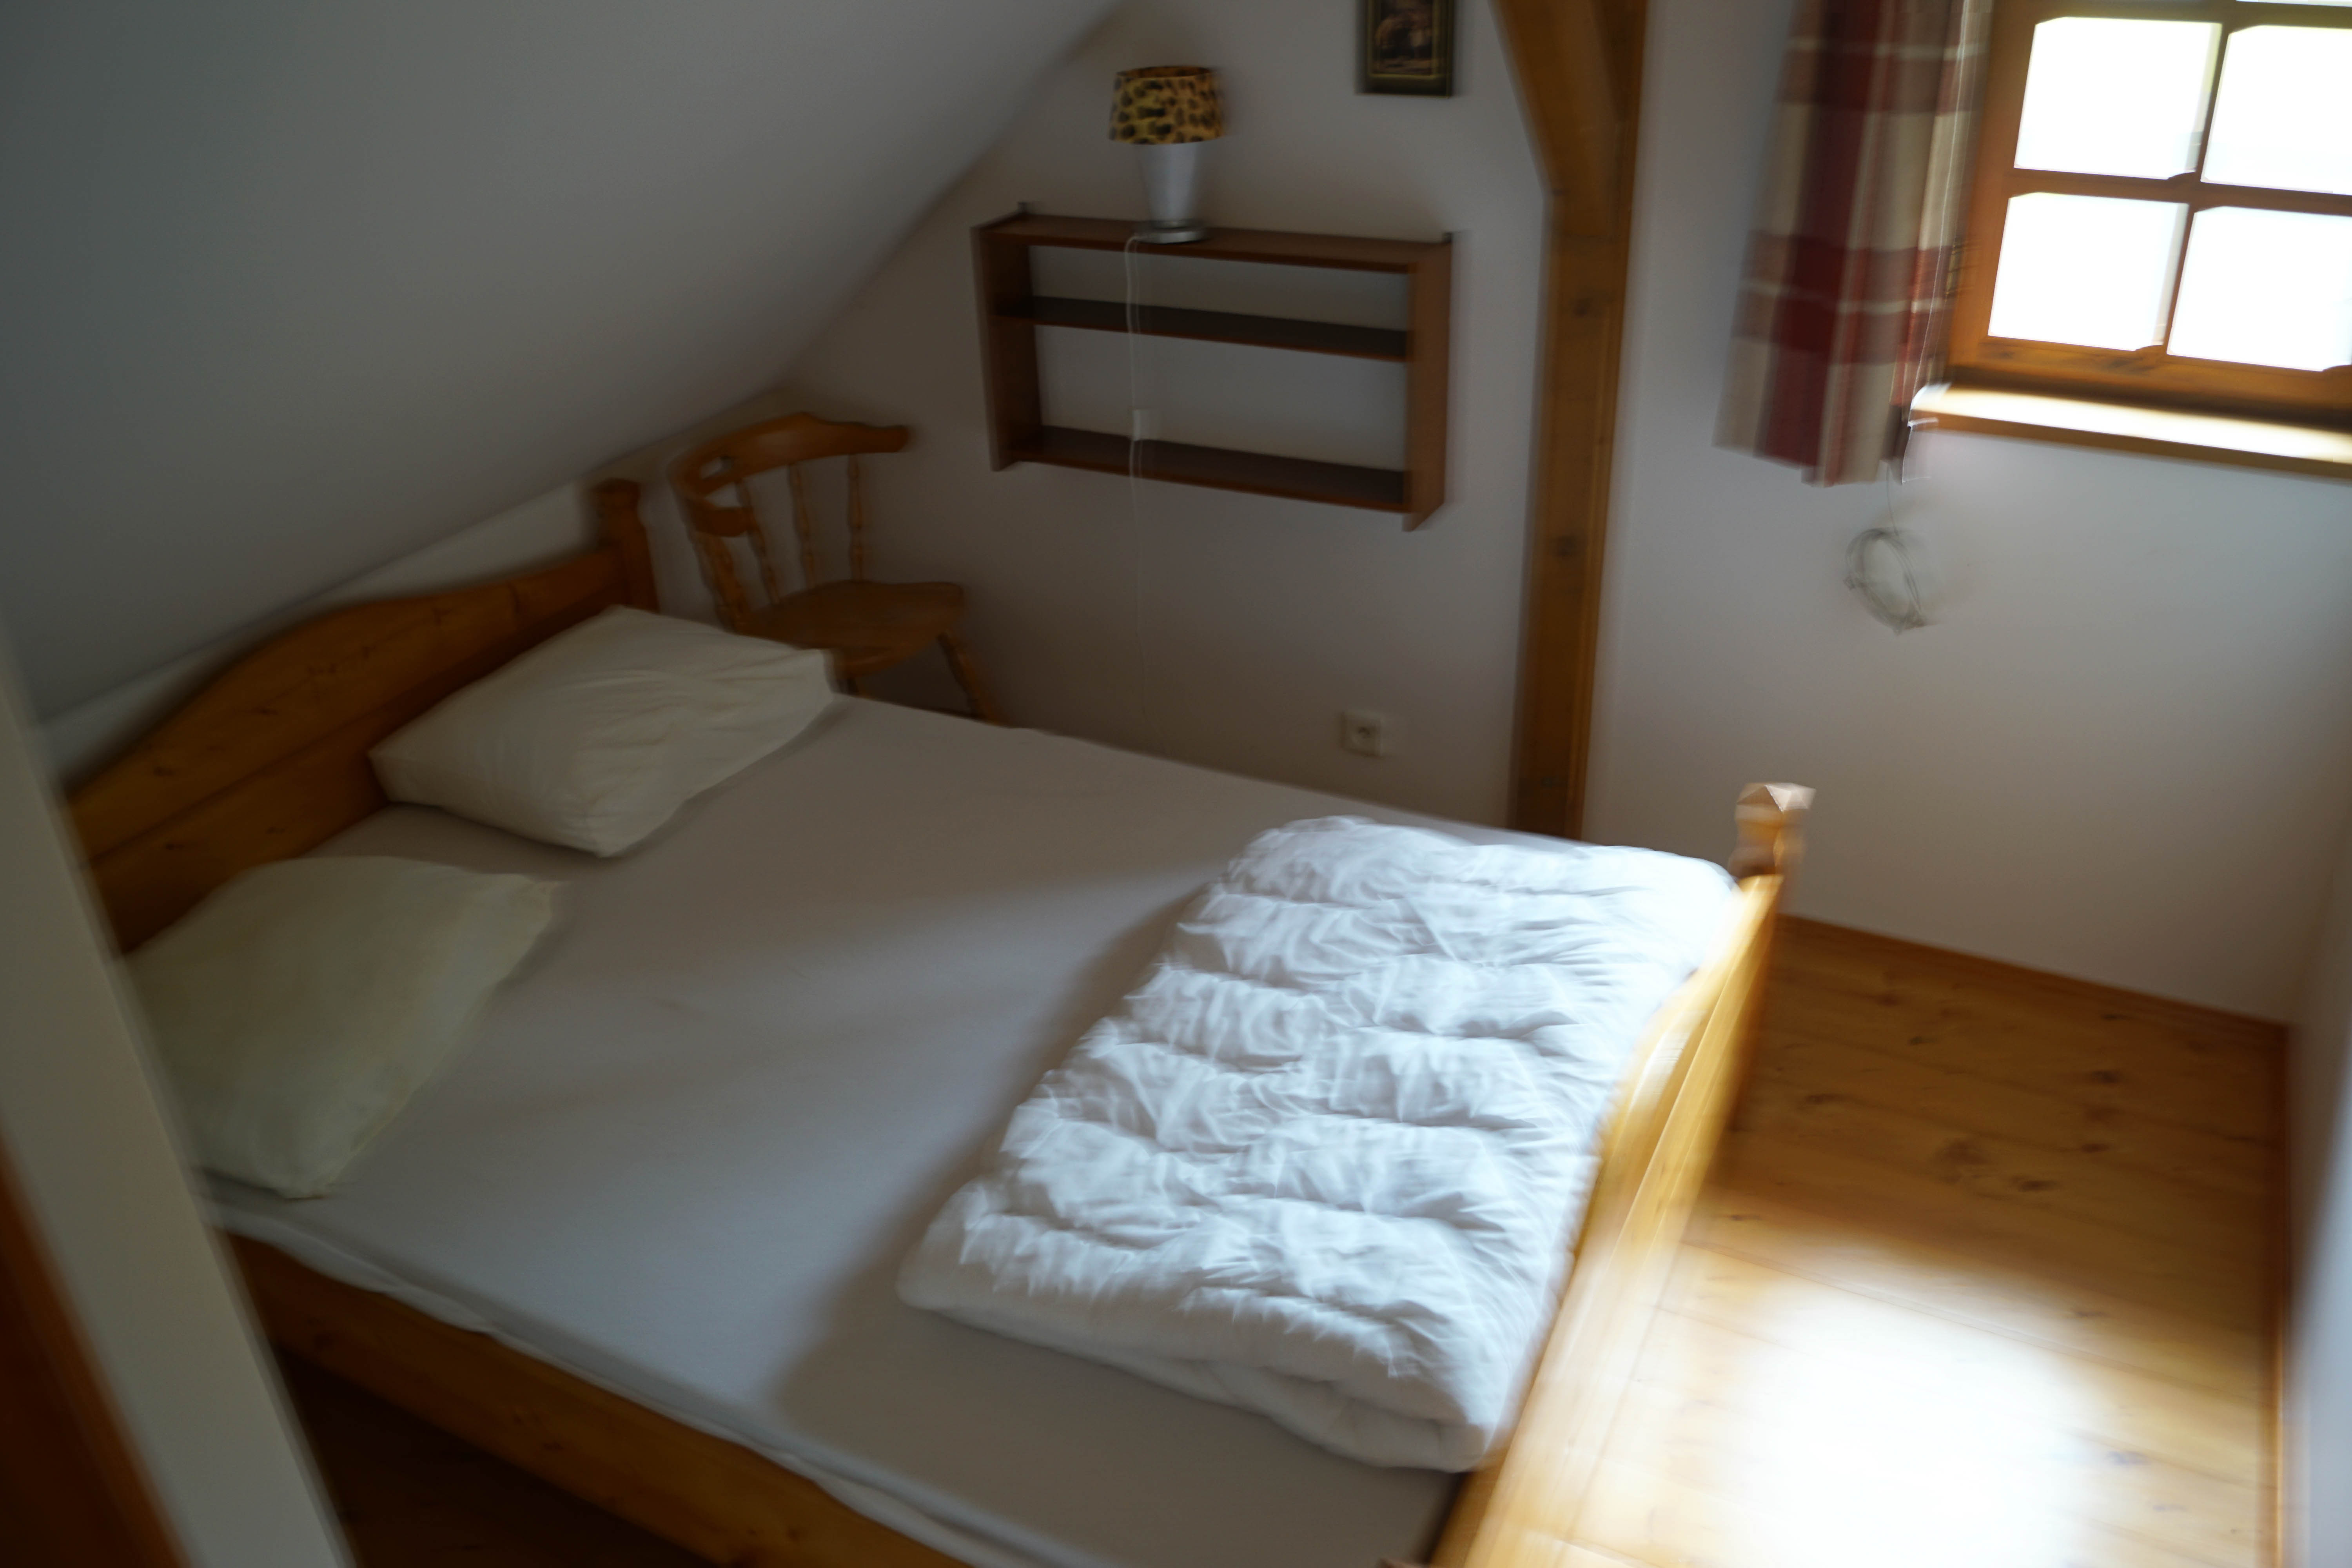 Slaapkamer, huis te koop in rustig plaatsje Reuzengebergte, Tsjechische Republiek.